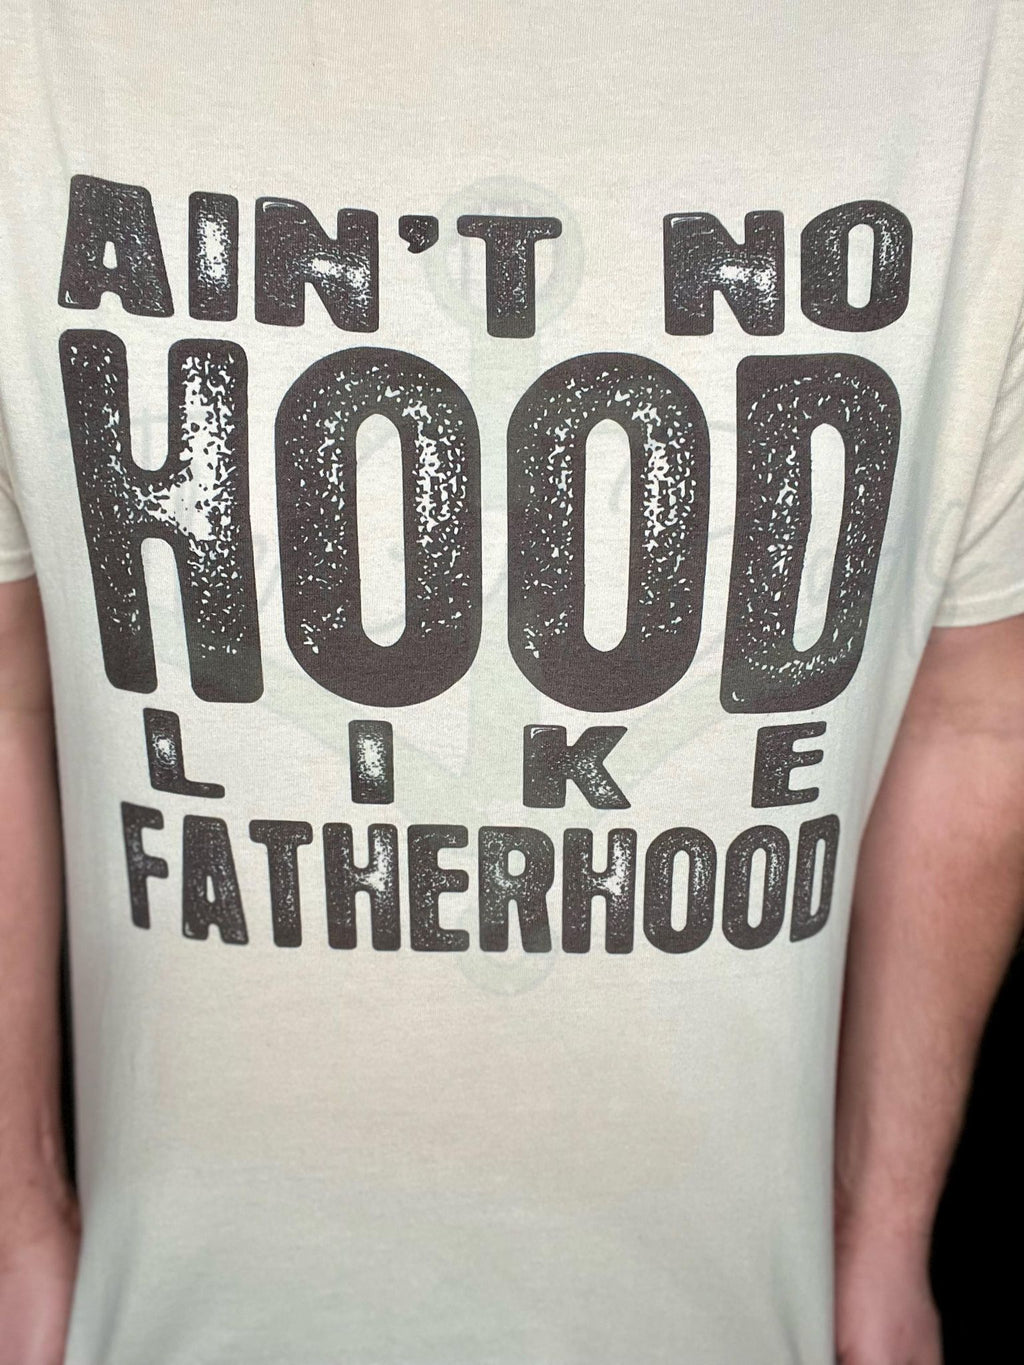 Ain't No Hood Like Fatherhood Top Design